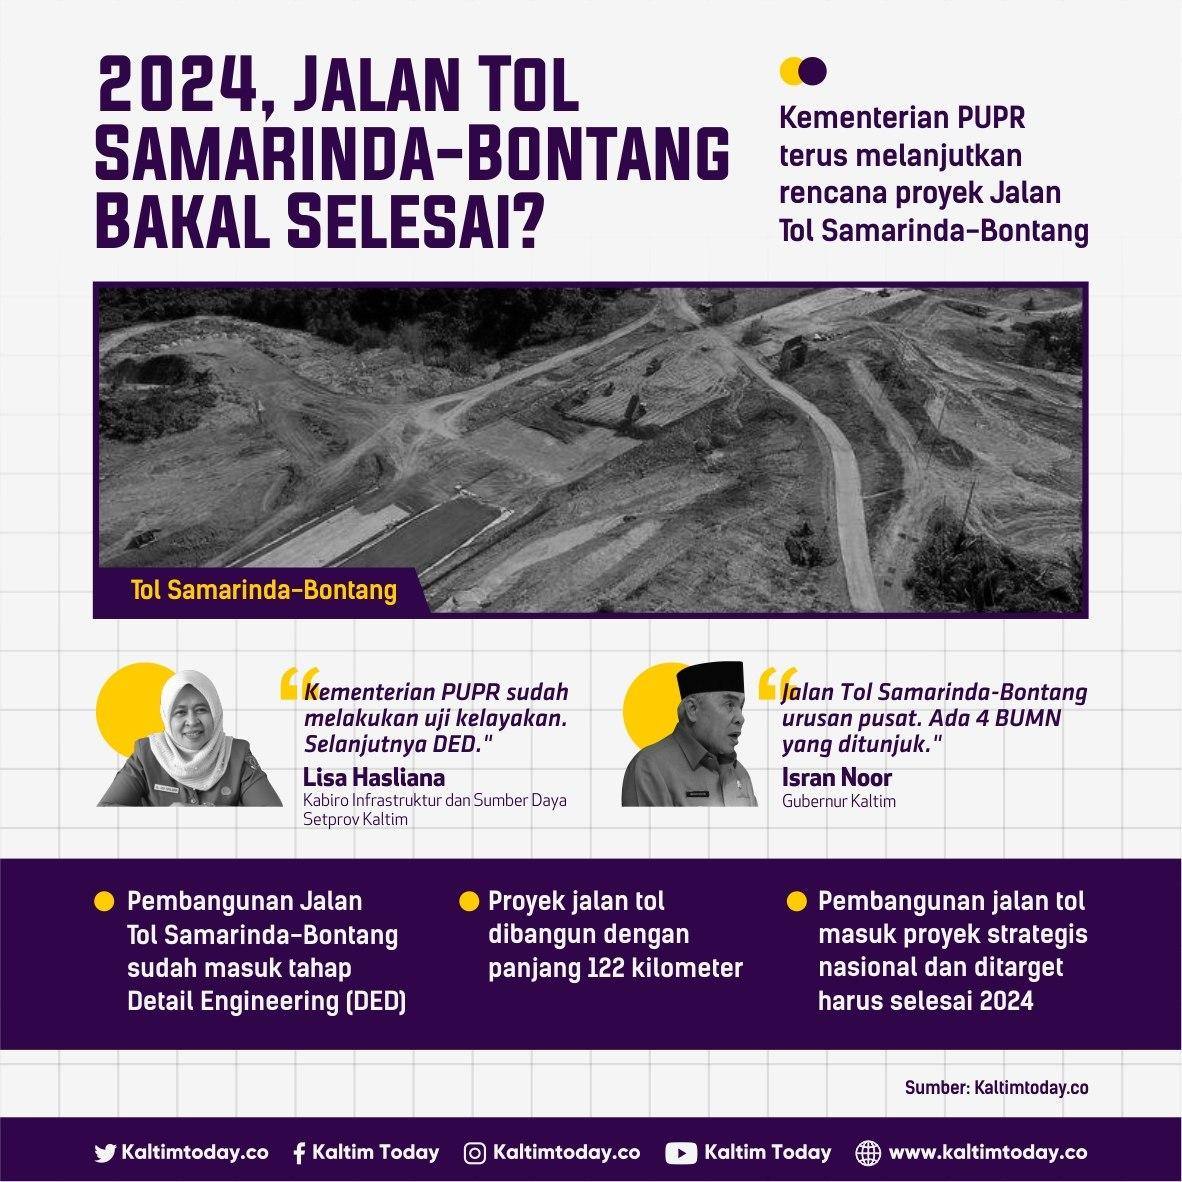 2024, Jalan Tol Samarinda-Bontang Bakal Selesai?